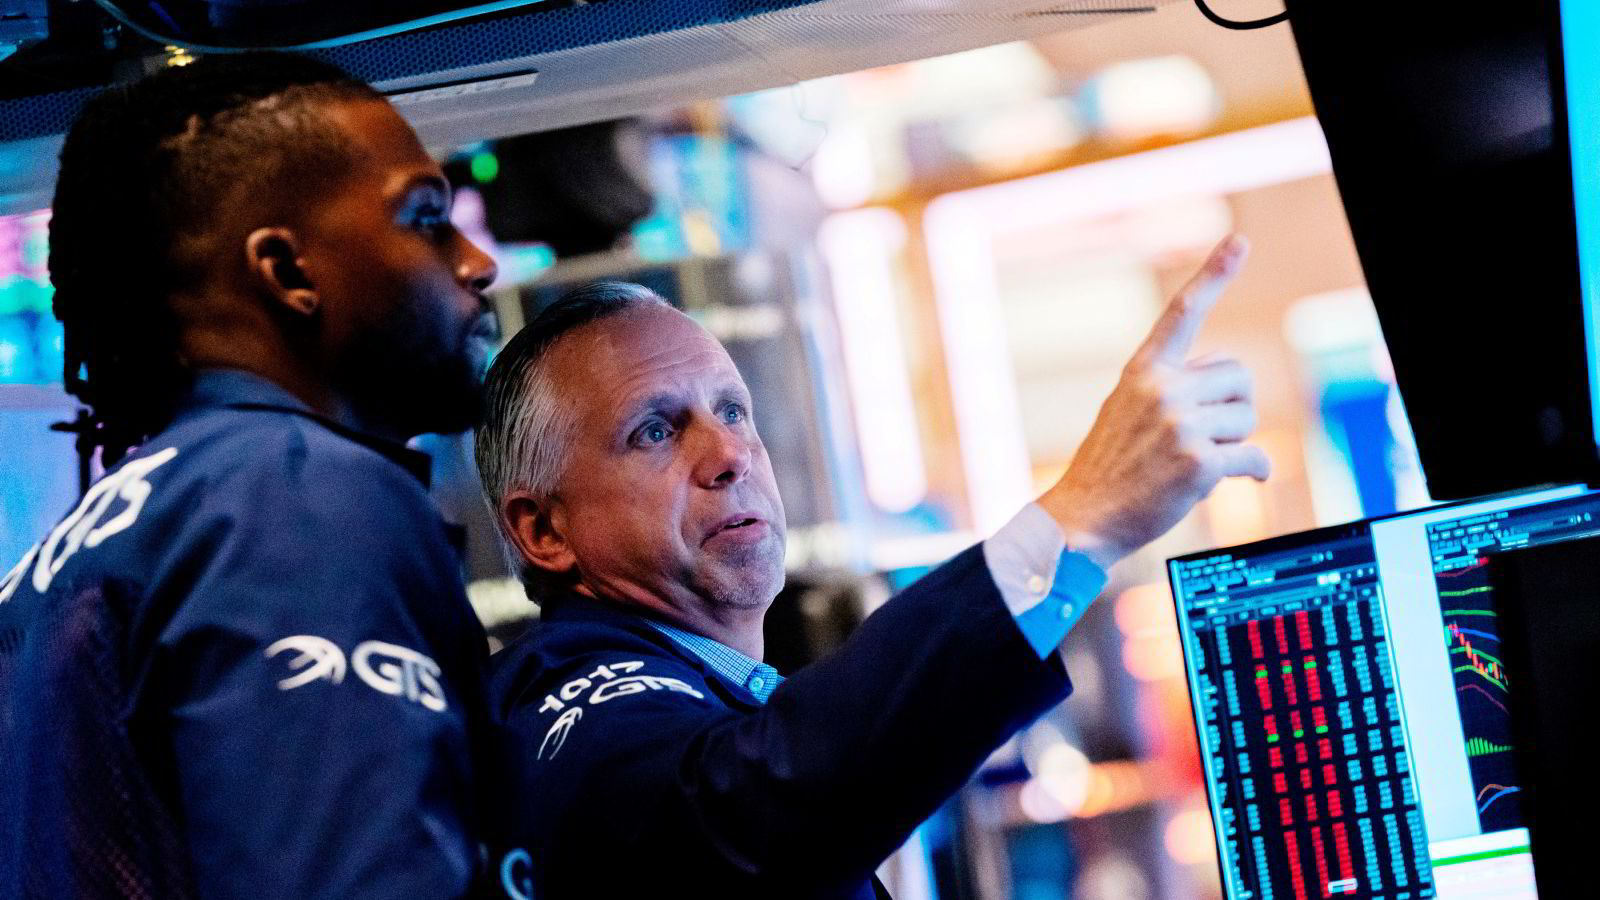 Nå kan det bli ekstra volatilt på Wall Street: – Veldig vanskelig å forutse